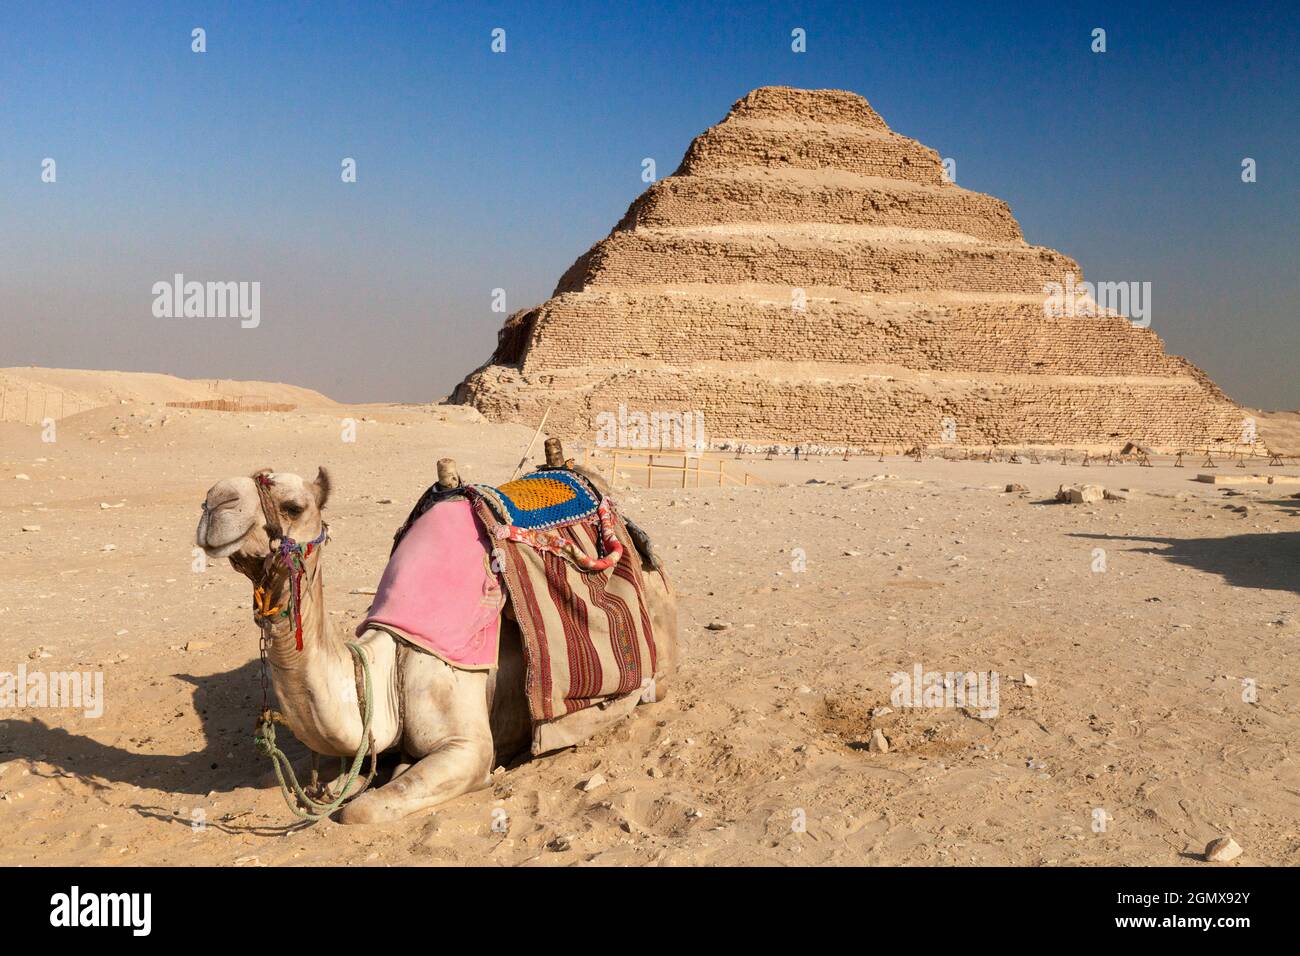 Saqqara, Egitto - 7 dicembre 2010; la piramide a gradini di Djoser si trova nella necropoli di Saqqara, Egitto, a nord-ovest di Memphis. il sid a 6 livelli e 4 livelli Foto Stock